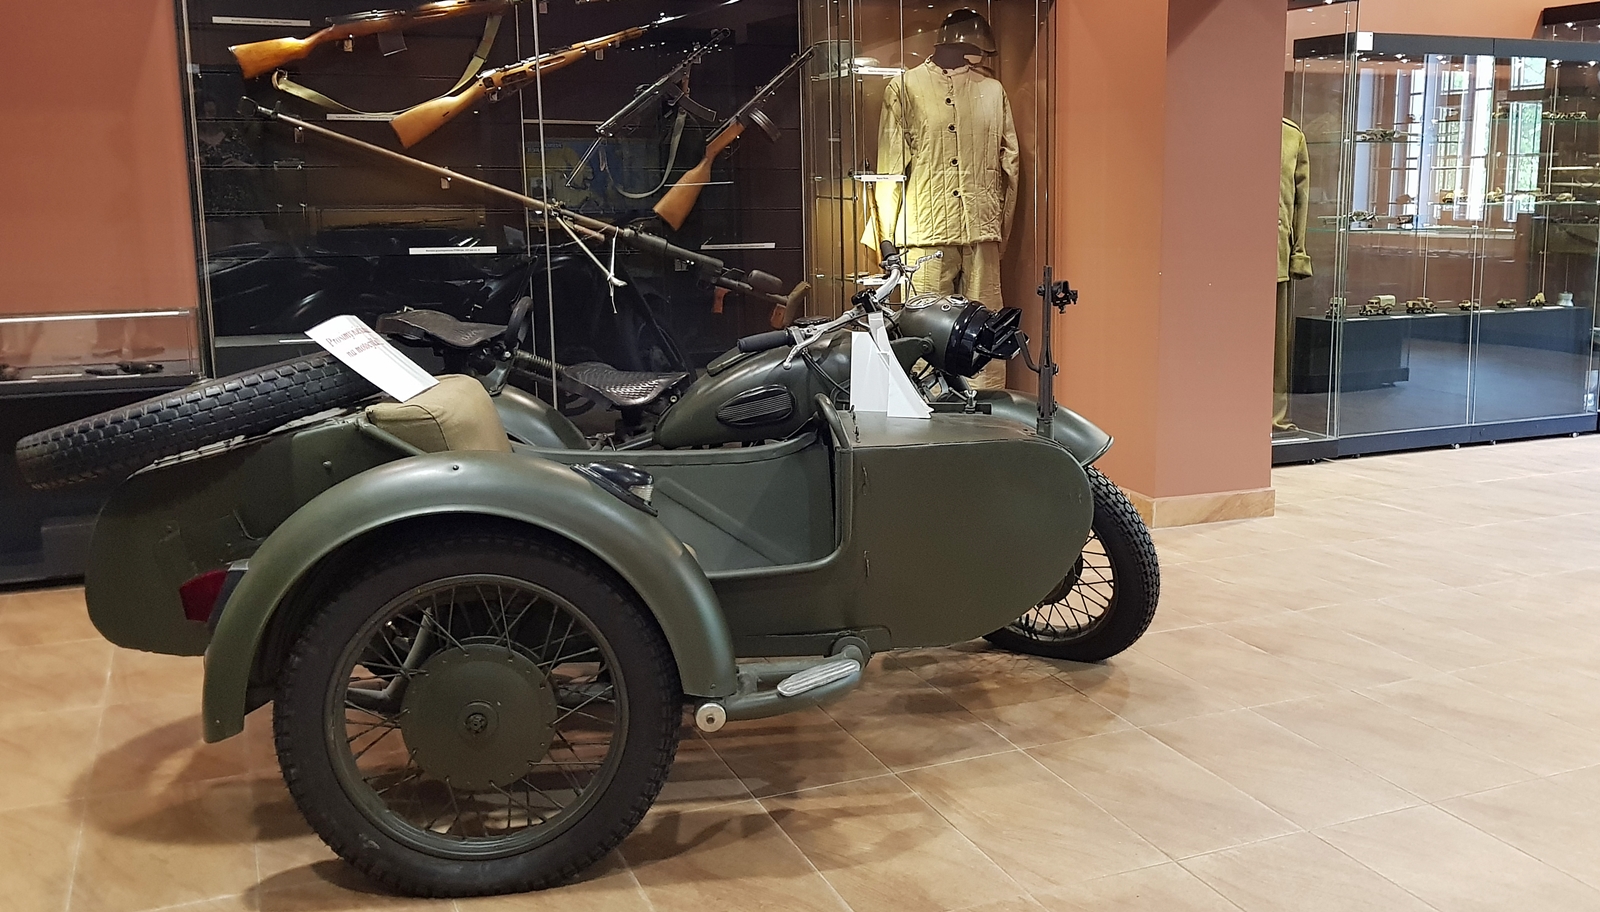 Motocykl BMWR66 na wystawie wewnętrznej w Muzeum Orła Białego.